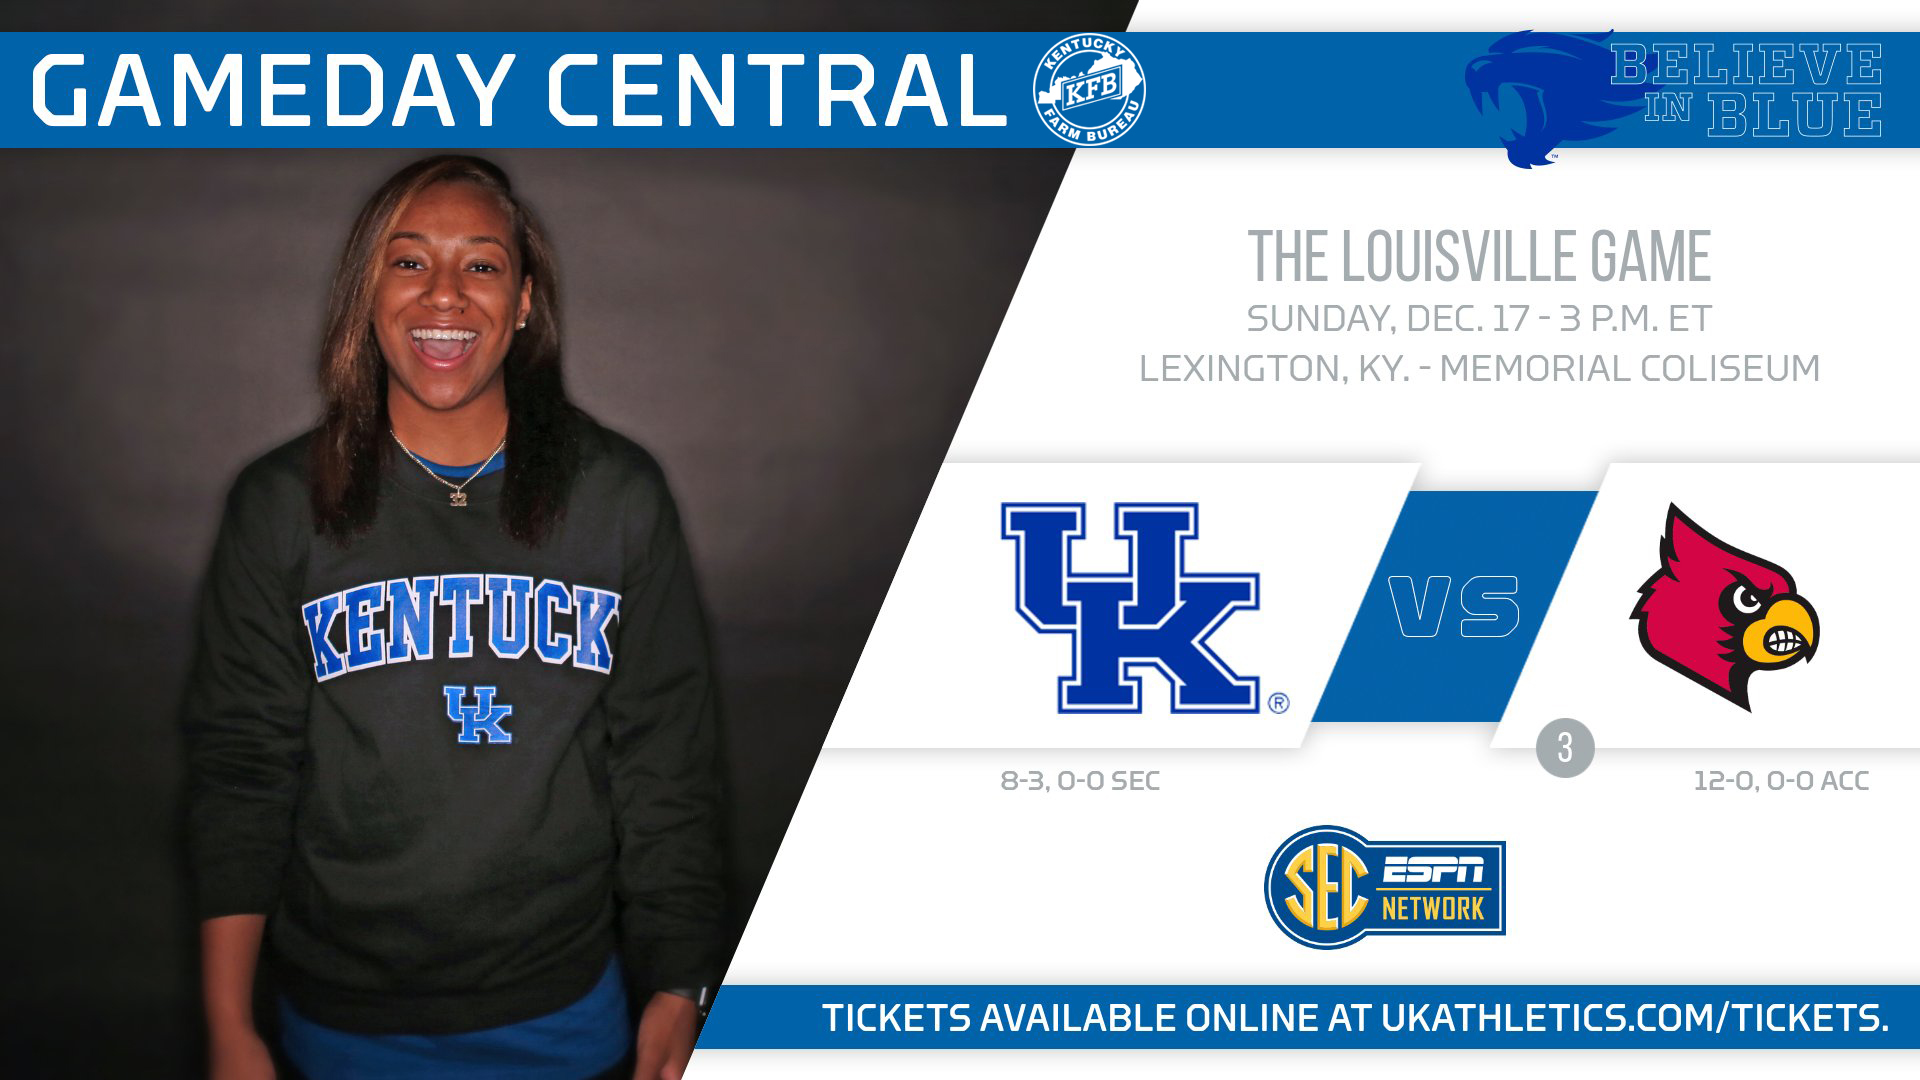 Kentucky Hosts No. 3/4 Louisville Sunday in Memorial Coliseum